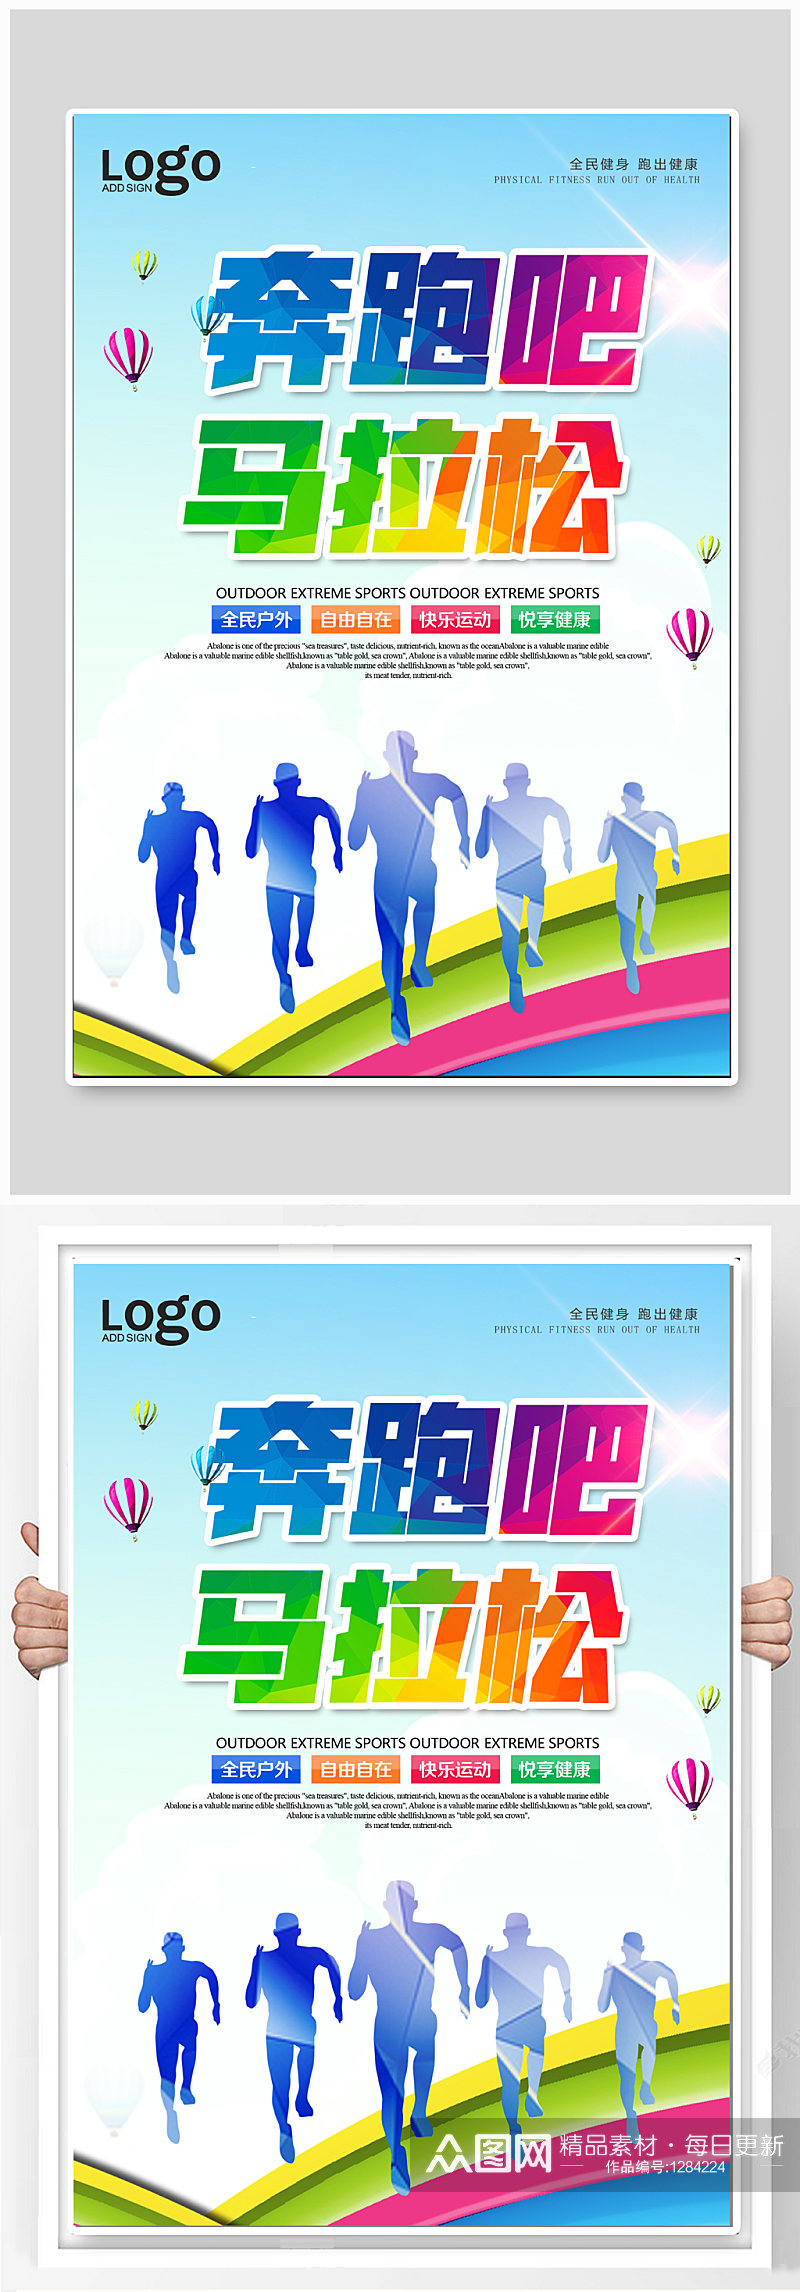 马拉松体育竞赛海报素材